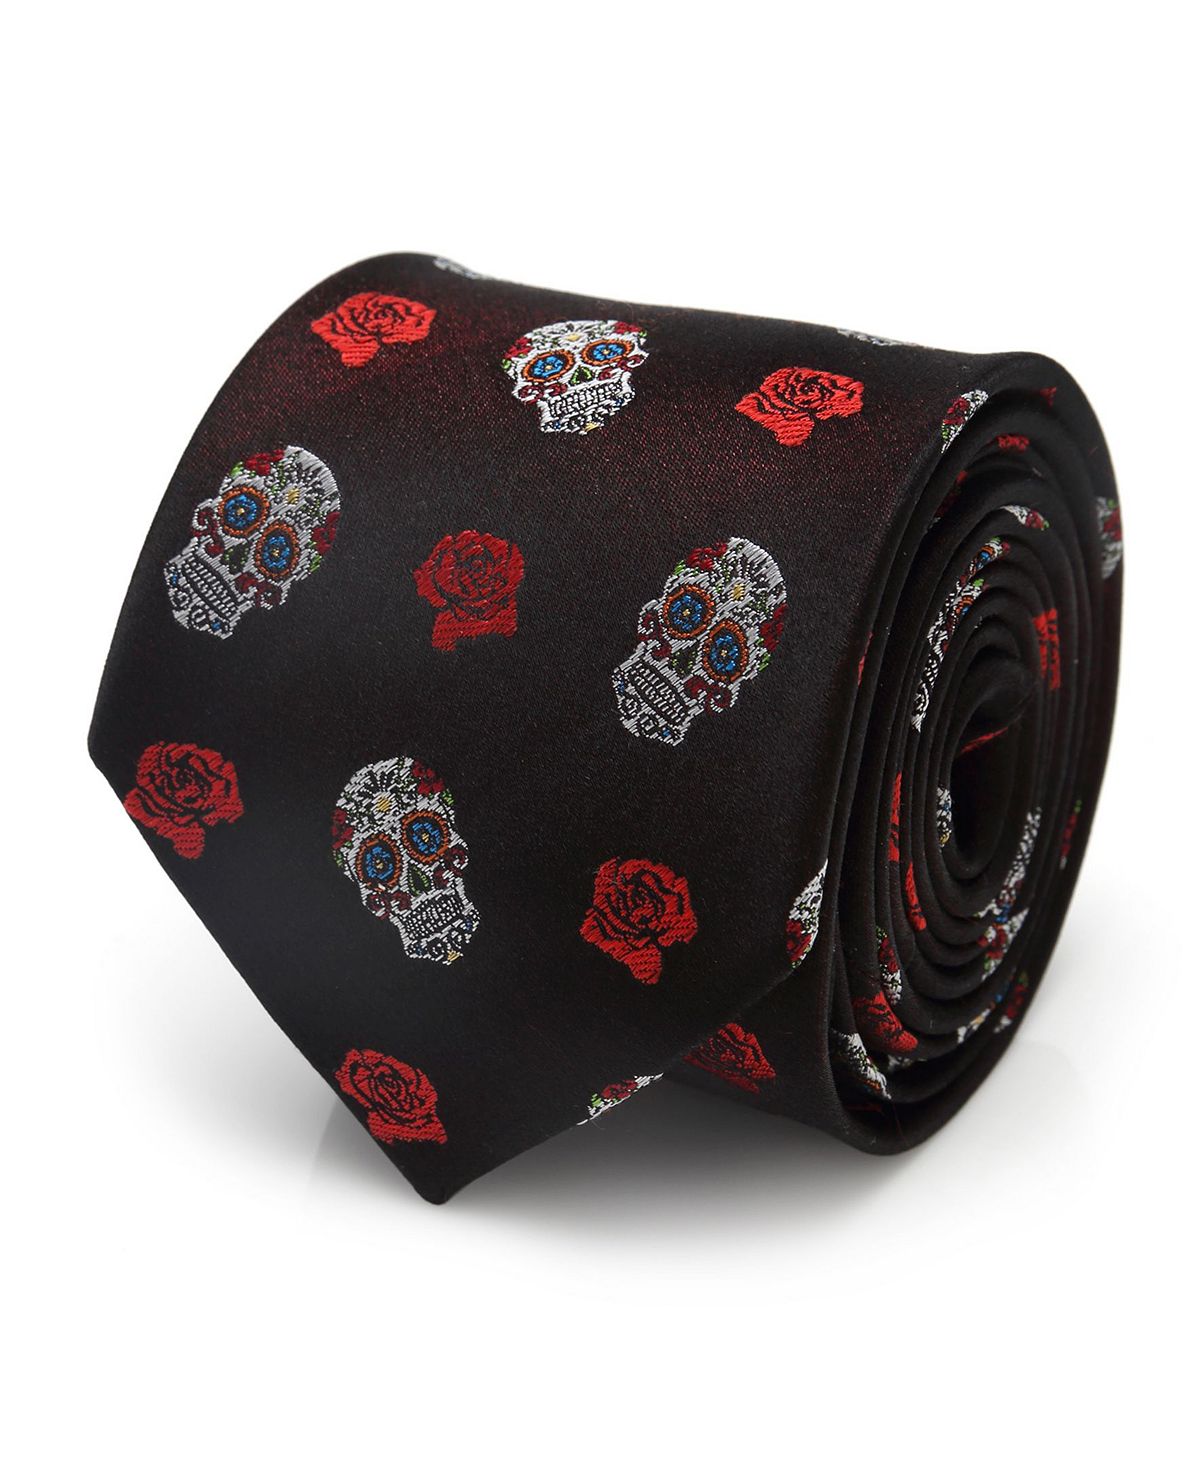 Мужской галстук с черепом Cufflinks Inc. черный овальный галстук dc comics с бэтменом cufflinks inc